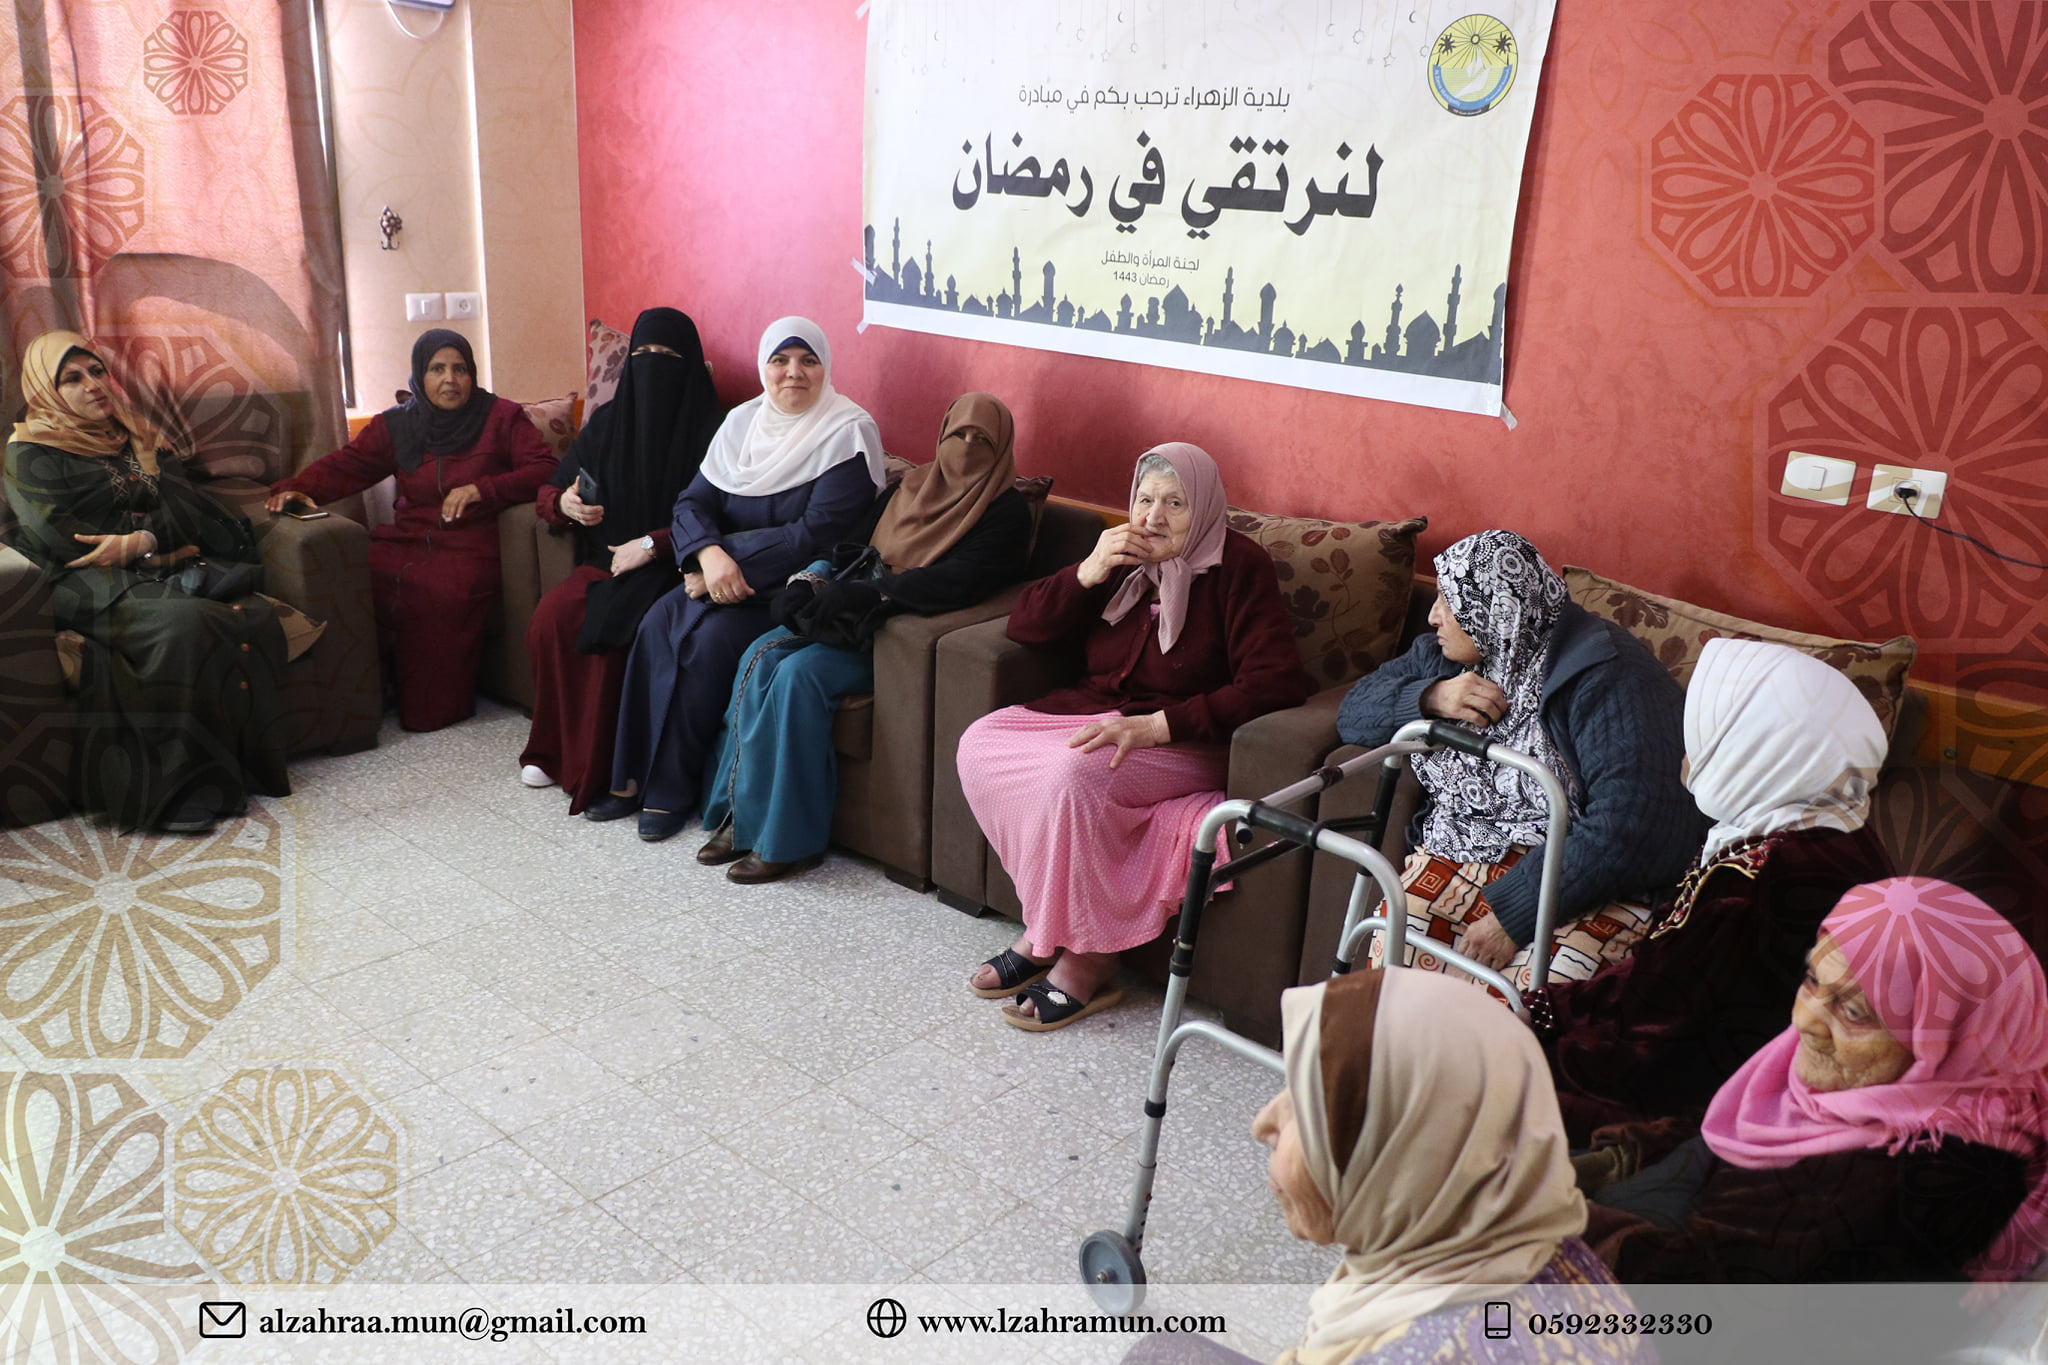 لجنة المرأة والطفل تنظم زيارة بمناسبة شهر رمضان المبارك لمركز الوفاء لرعاية المسنين